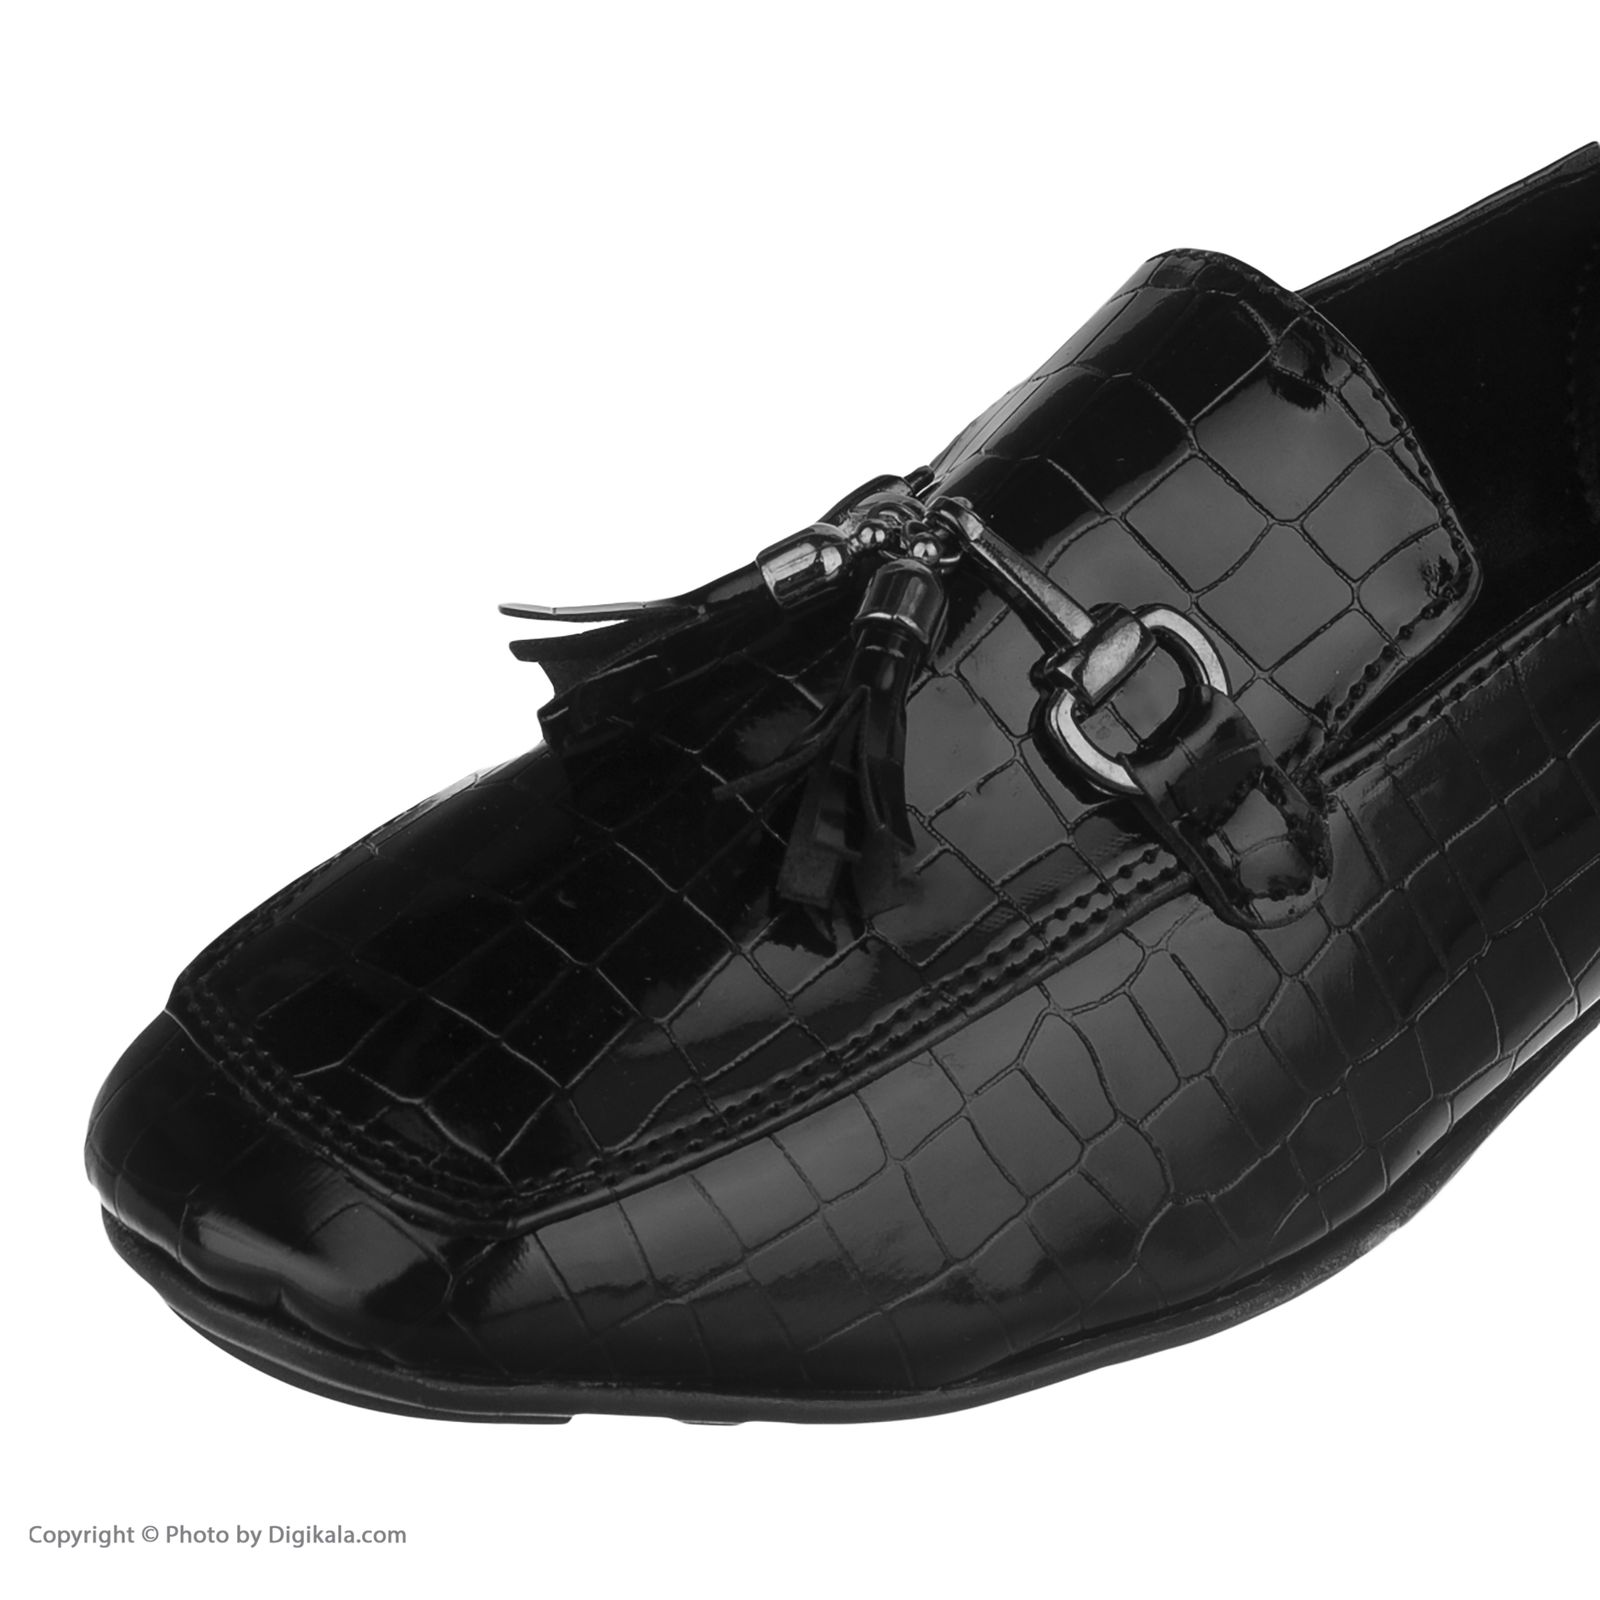  کفش زنانه لبتو مدل 1031-99 -  - 7